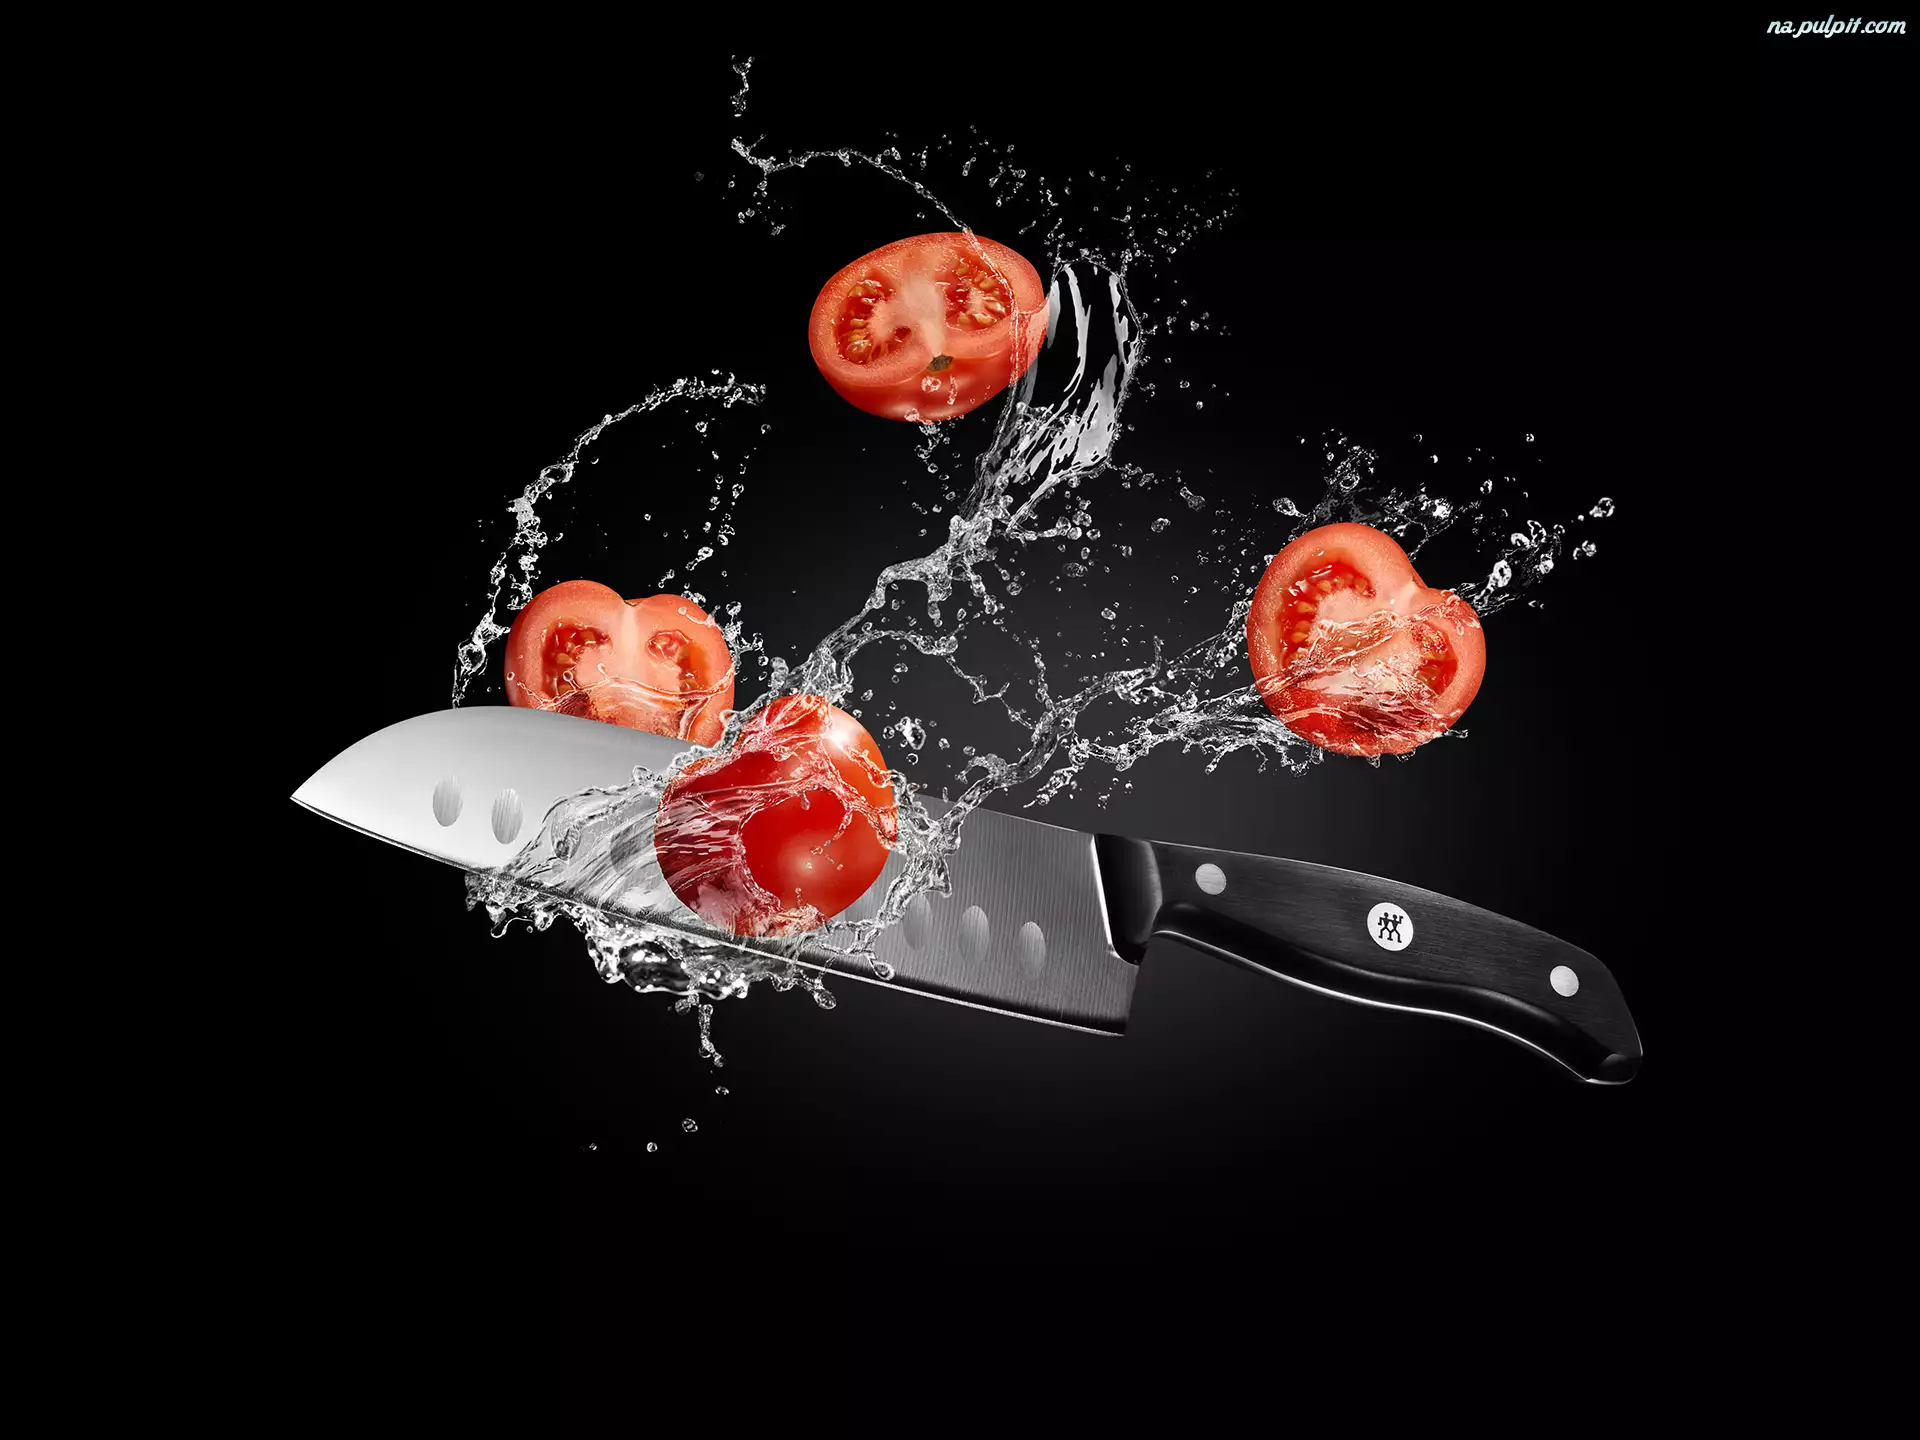 Pomidory, Nóż, Woda, Przekrojone